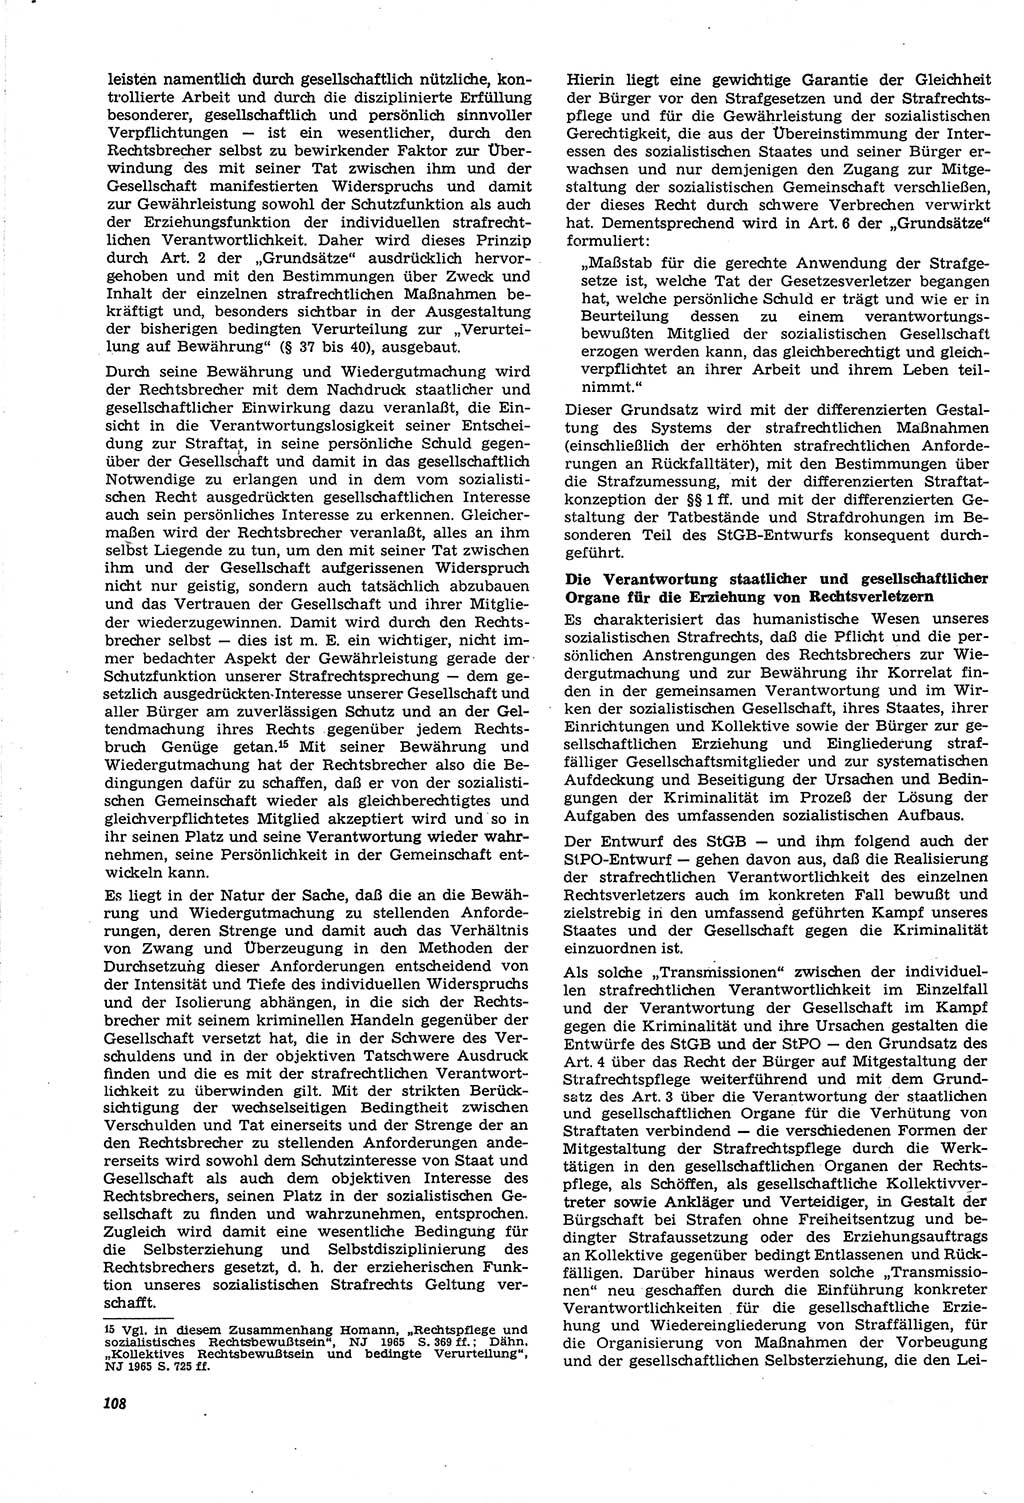 Neue Justiz (NJ), Zeitschrift für Recht und Rechtswissenschaft [Deutsche Demokratische Republik (DDR)], 21. Jahrgang 1967, Seite 108 (NJ DDR 1967, S. 108)